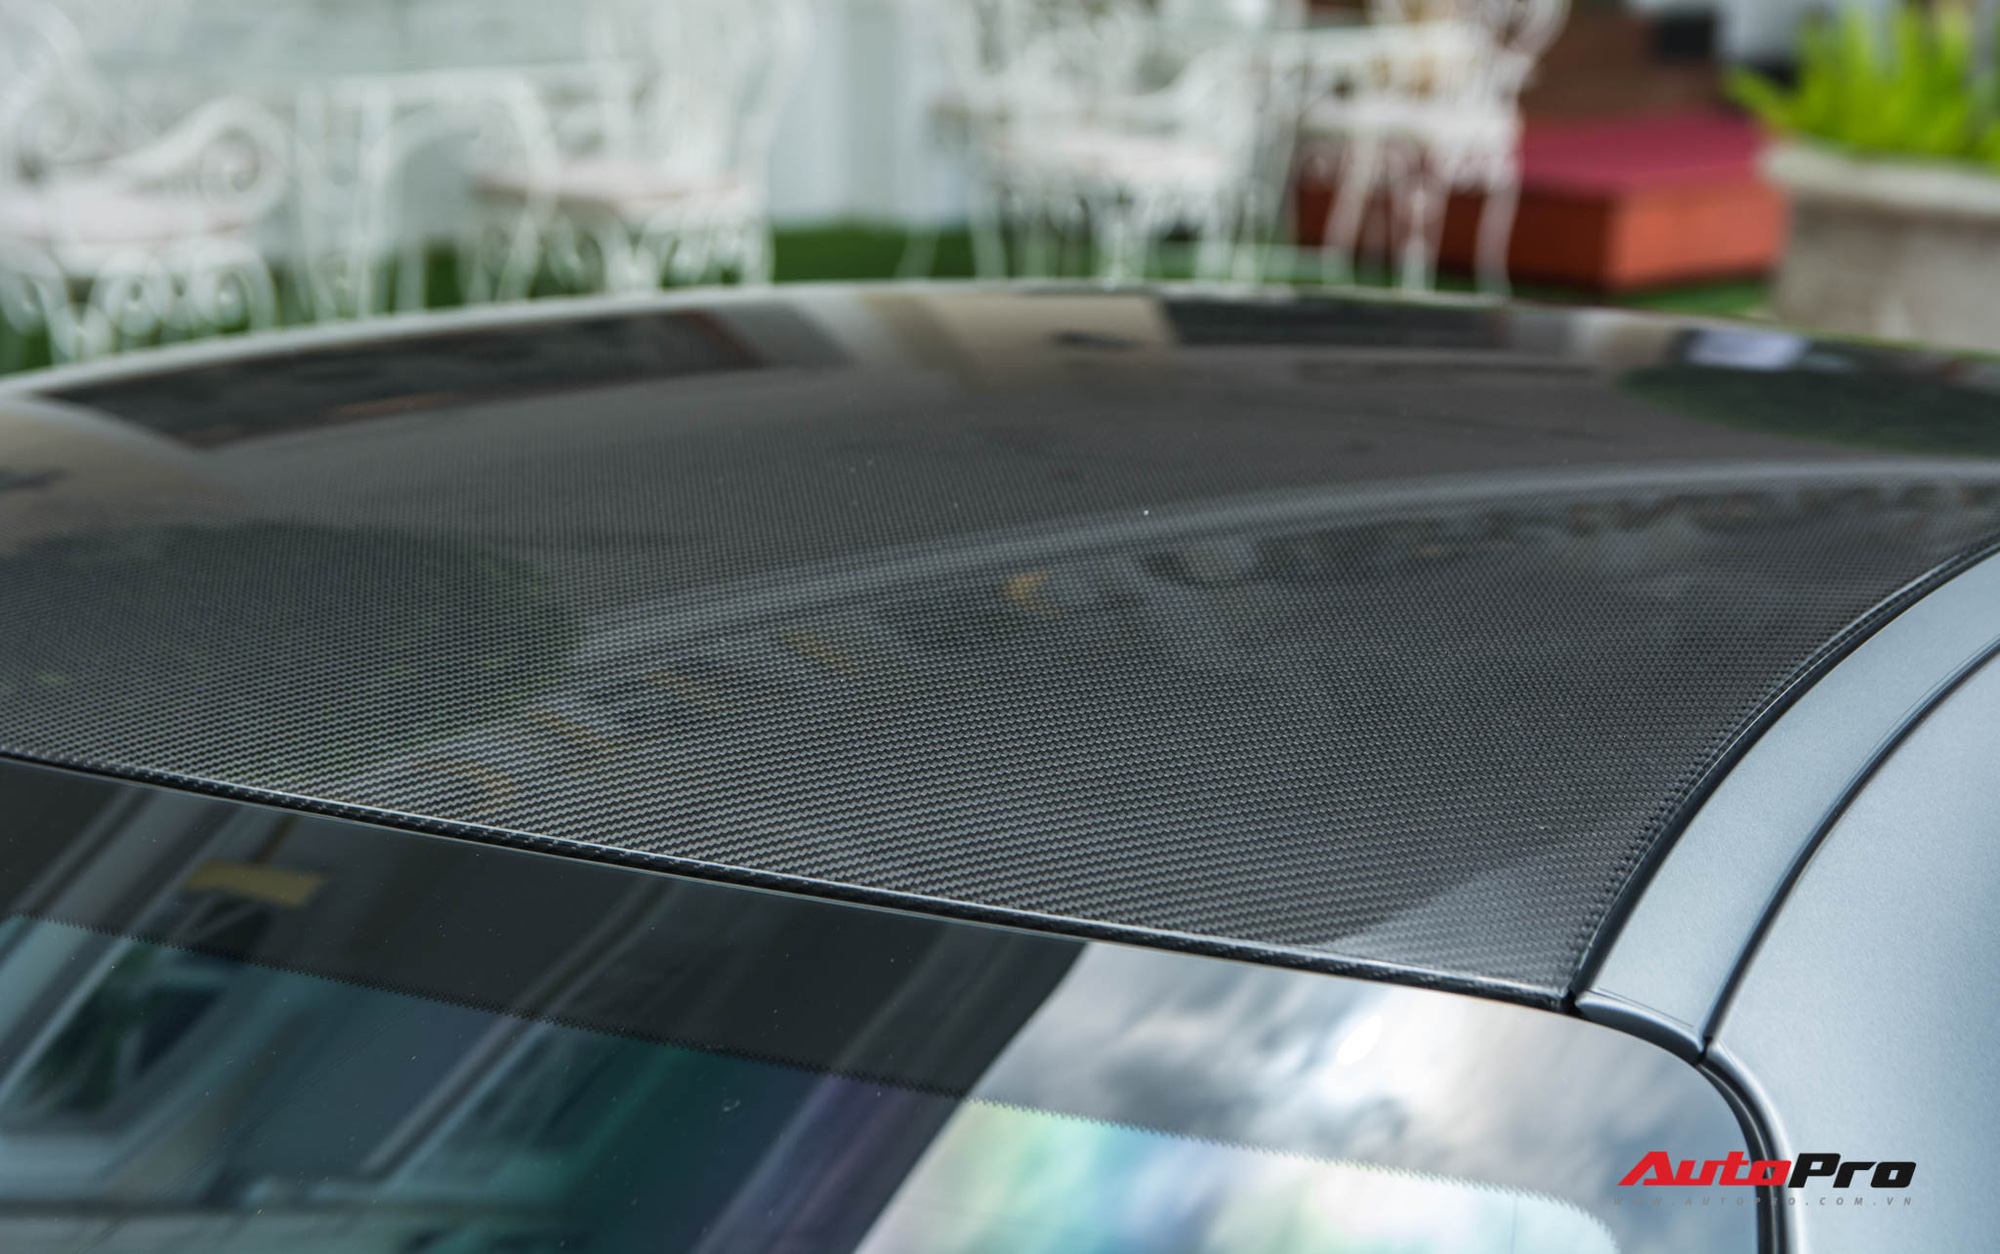 Bóc tách tùy chọn trên Mercedes-AMG GT R của doanh nhân Nguyễn Quốc Cường: Riêng màu sơn đã ngang ngửa một chiếc Honda SH - Ảnh 6.